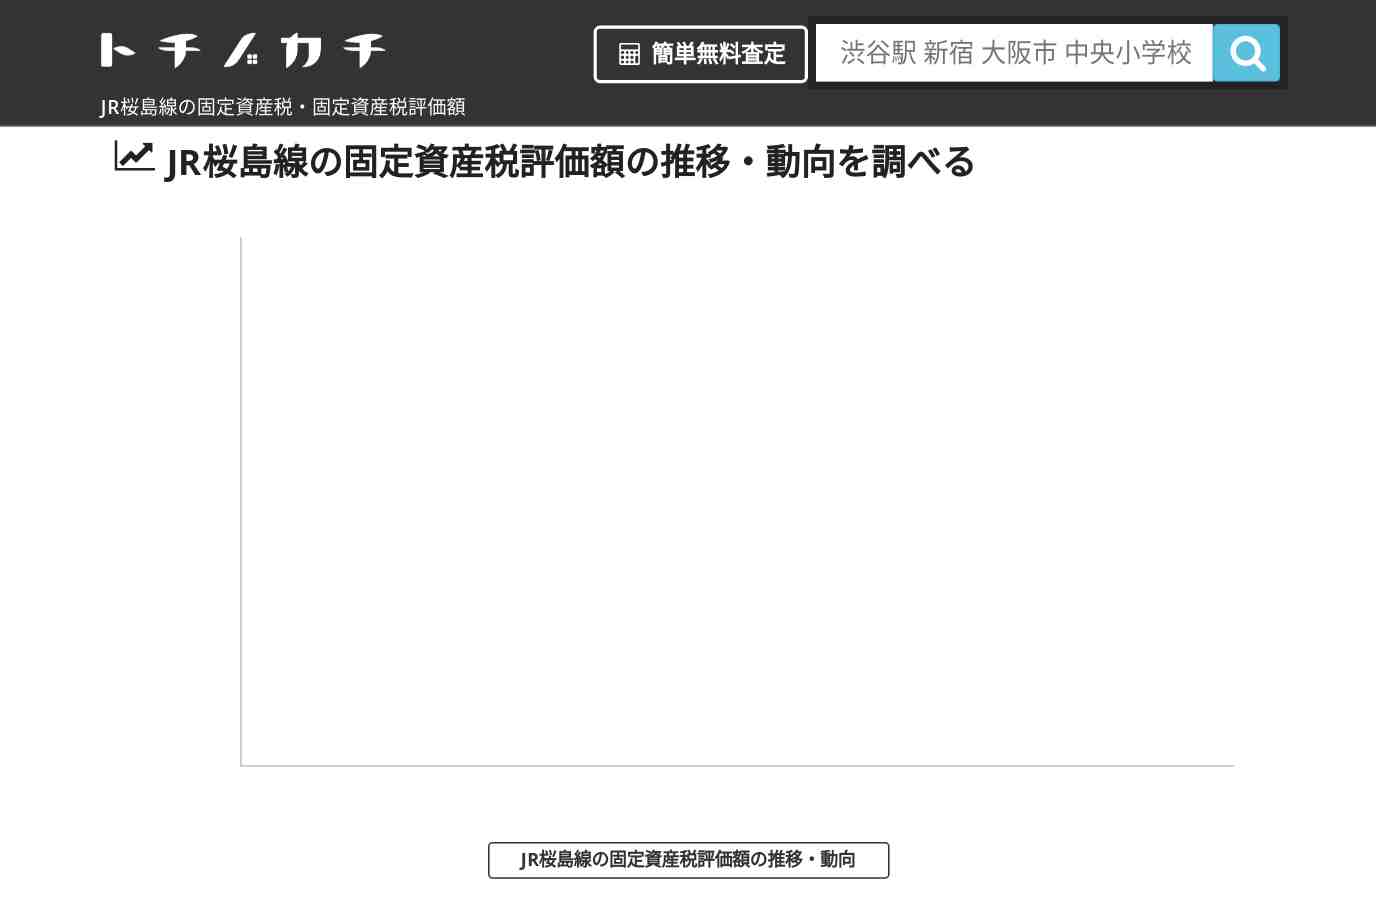 JR桜島線(JR)の固定資産税・固定資産税評価額 | トチノカチ